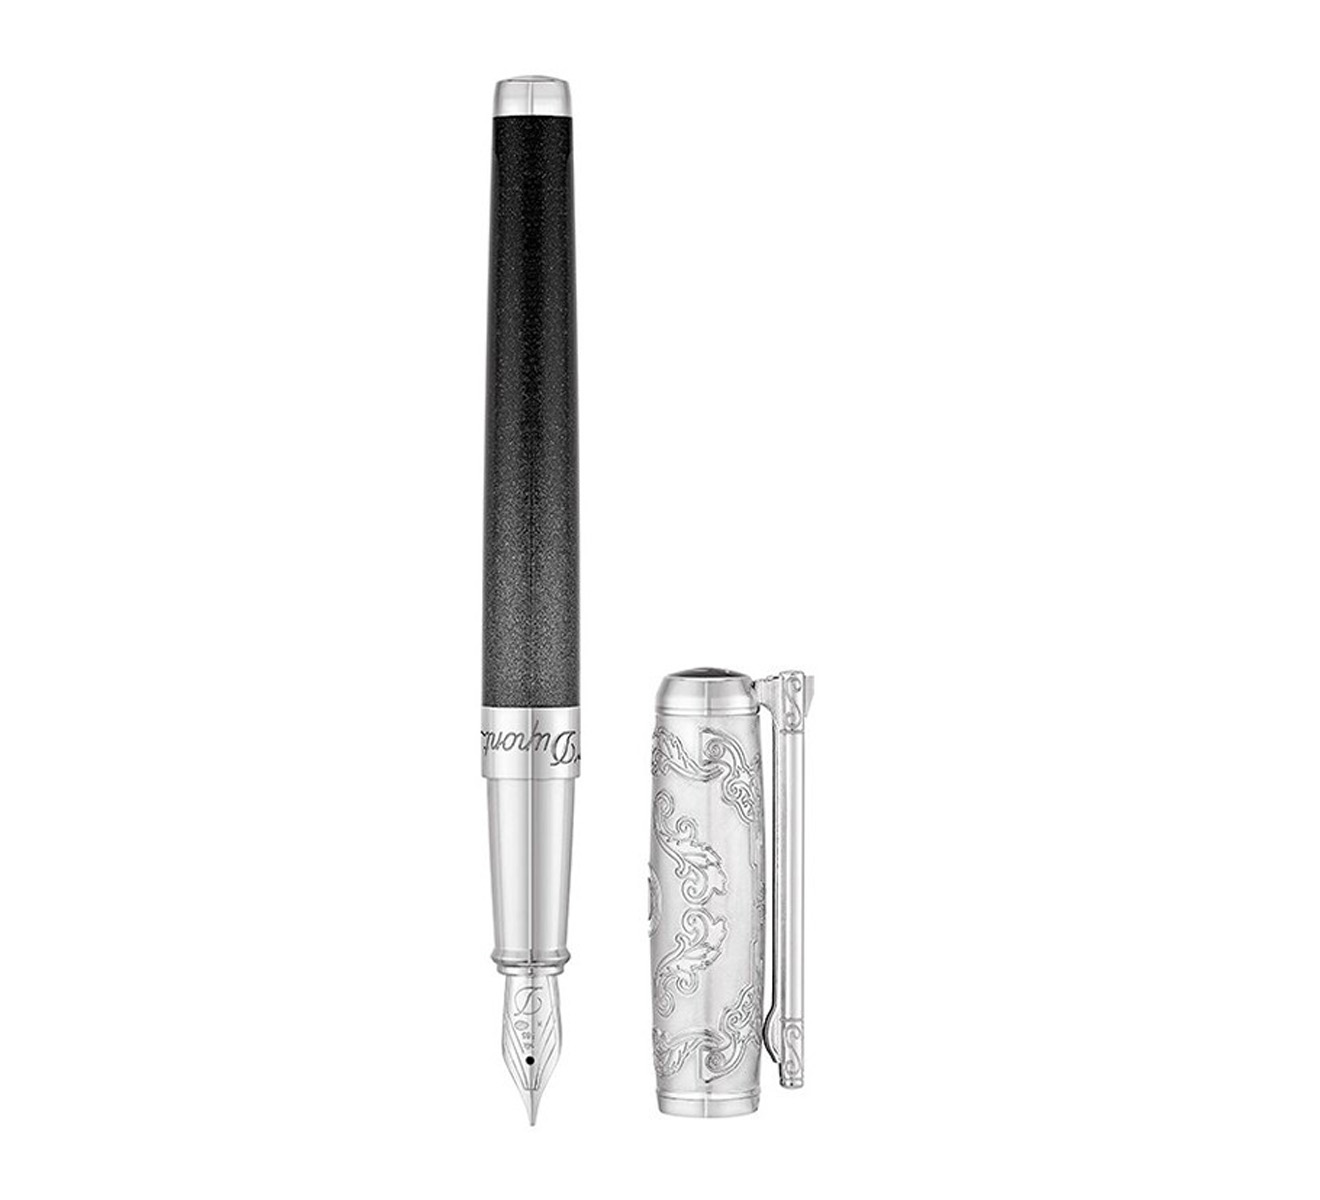 Перьевая ручка Premium S.T. Dupont Wild West 410065 - фото 1 – Mercury